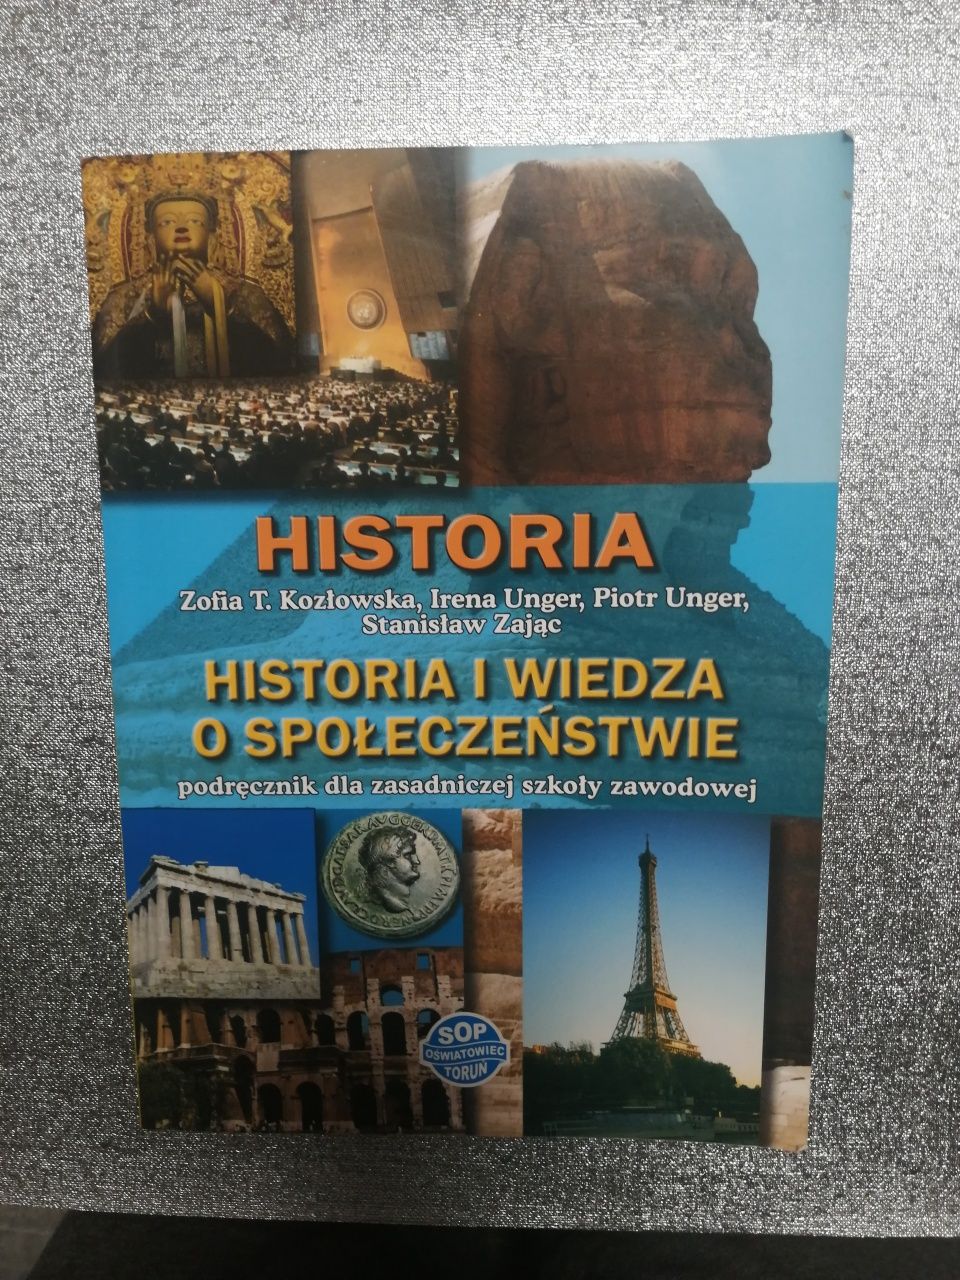 Historia i wiedza o społeczeństwie - podręcznik